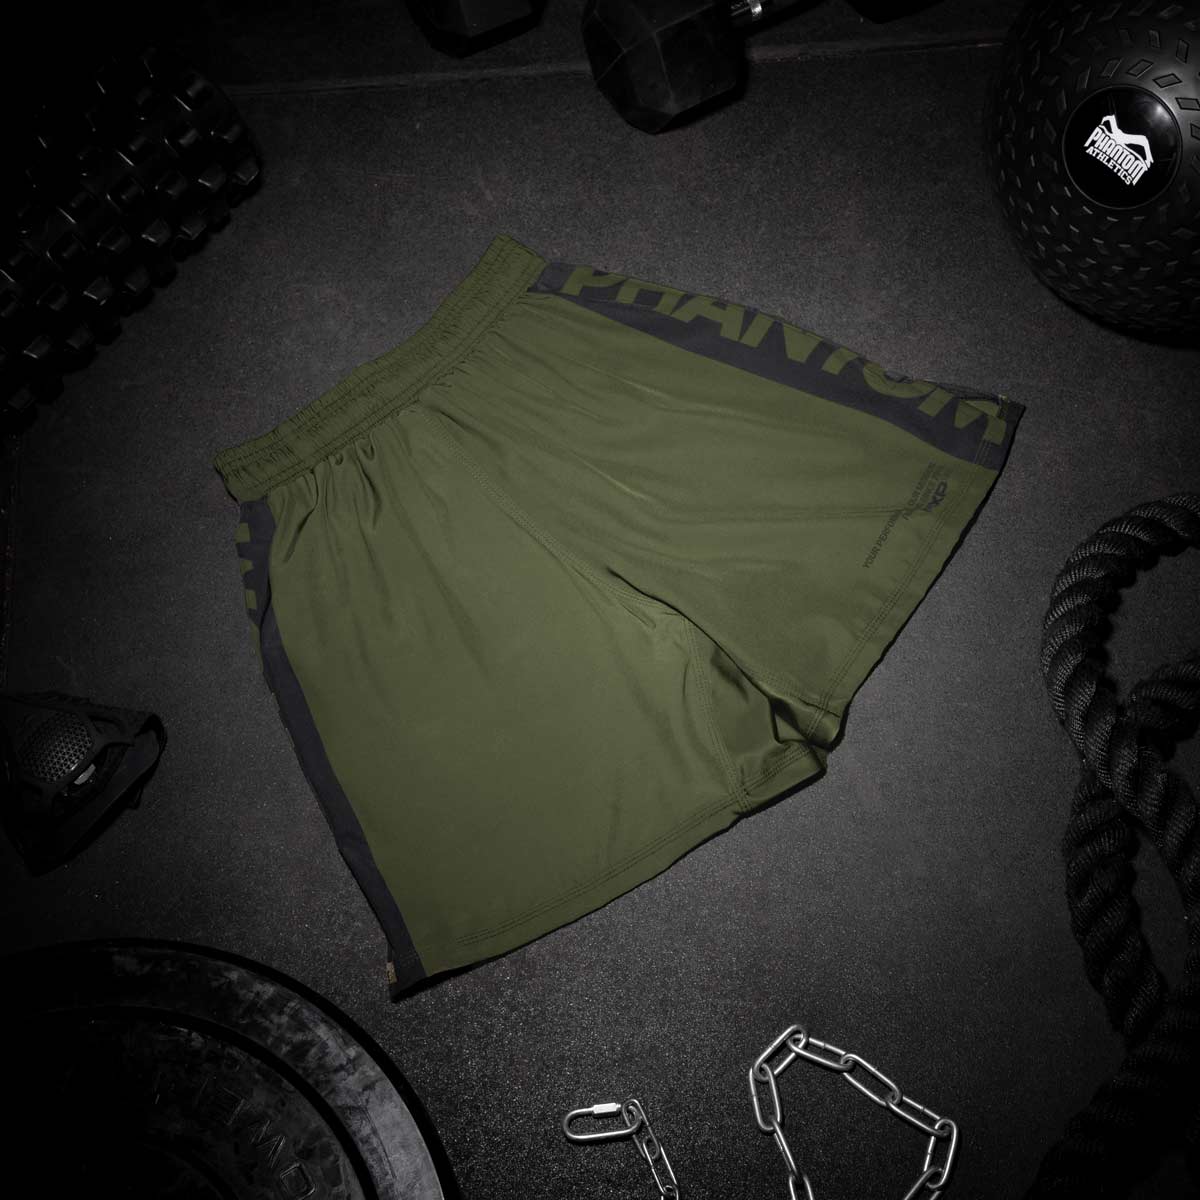 Die Phantom EVO Fightshorts sind die idealen Shorts für deinen Kampfsport. Ganz egal ob MMA, BJJ, Kickboxen oder Muay Thai. Durch das ultraleichte, elastische, reissfeste und schnelltrocknende Material bieten sie die volle Bewegungsfreiheit und maximalen Komfort, so dass du dich ganz auf deinen Fight oder dein Training konzentrieren kannst. Hier in der Farbe Army Grün